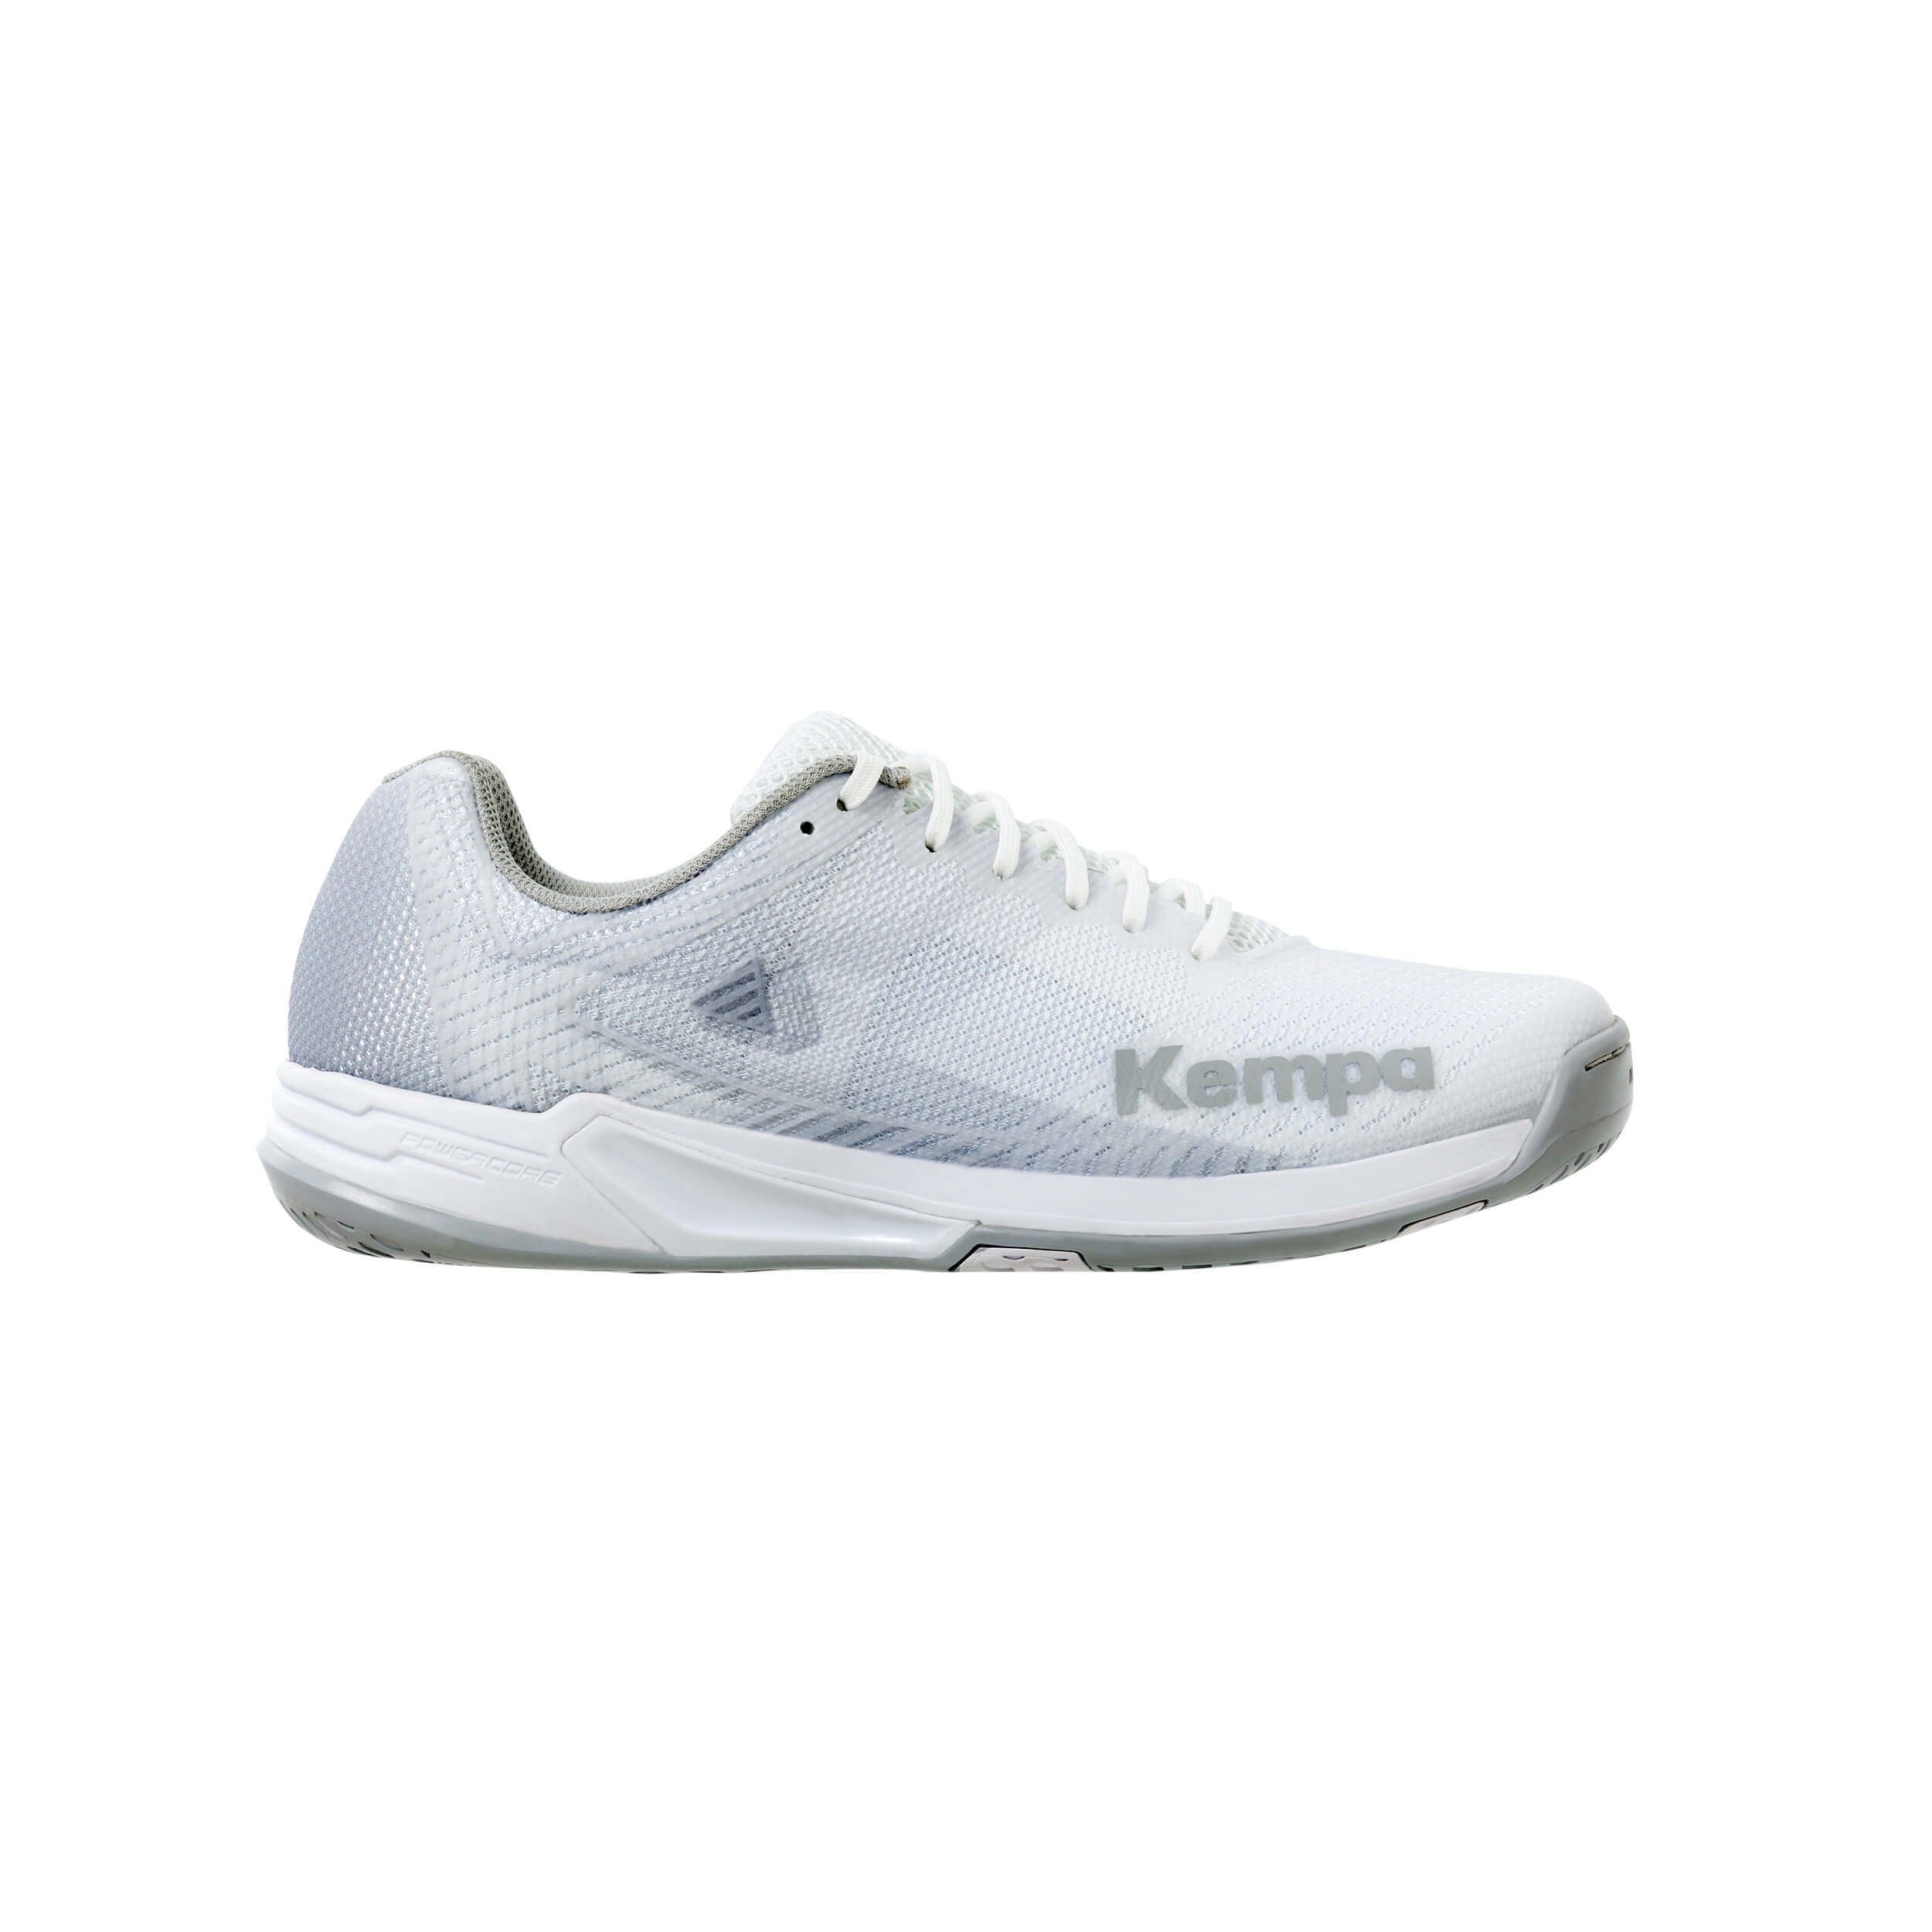 Kempa Kempa Hallen-Sport-Schuhe WING 2.0 grau WOMEN Hallenschuh weiß/cool 03